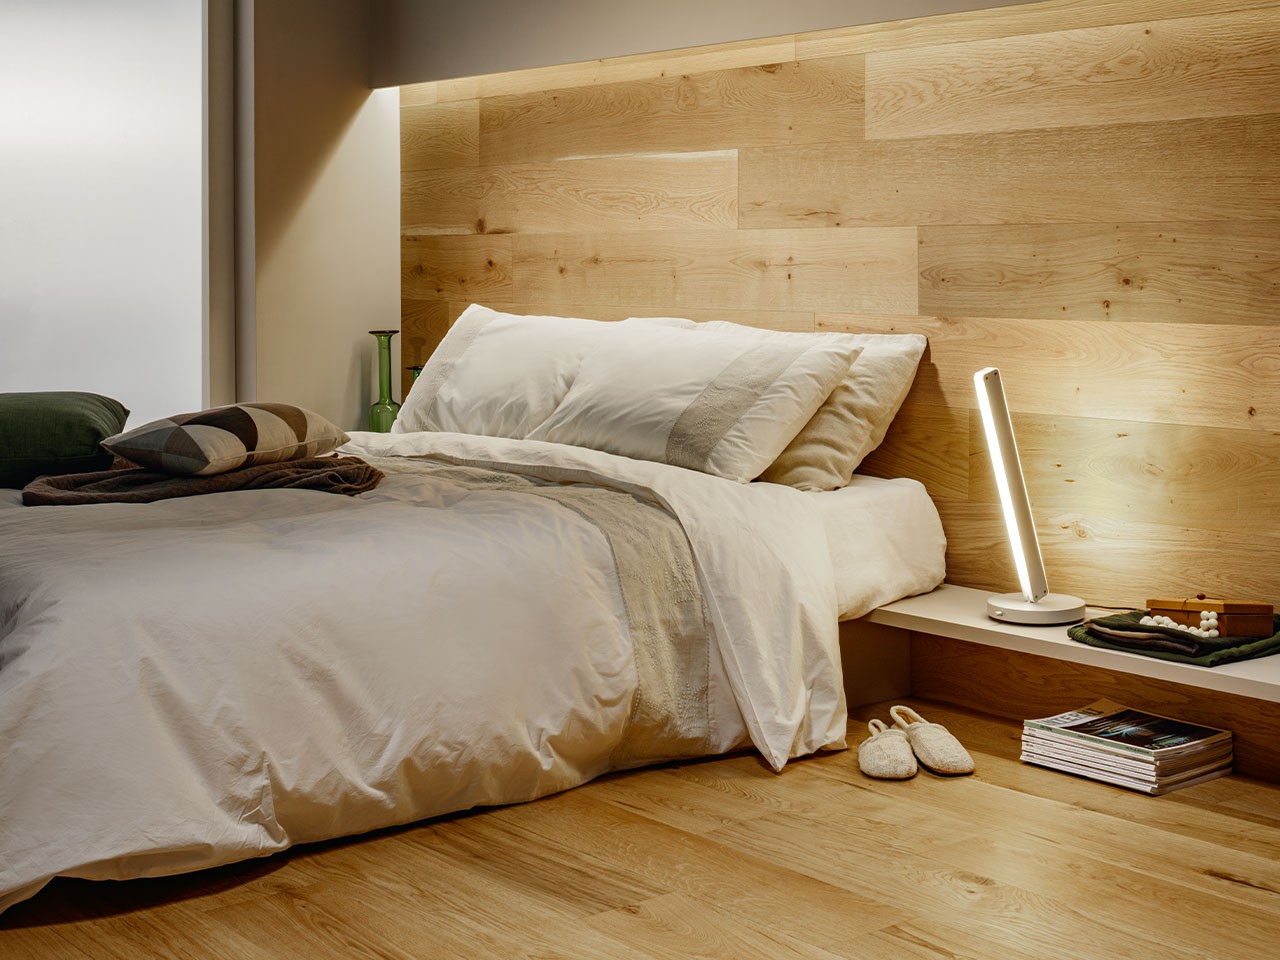 Parete del soggiorno rivestita in legno: soluzioni in gres